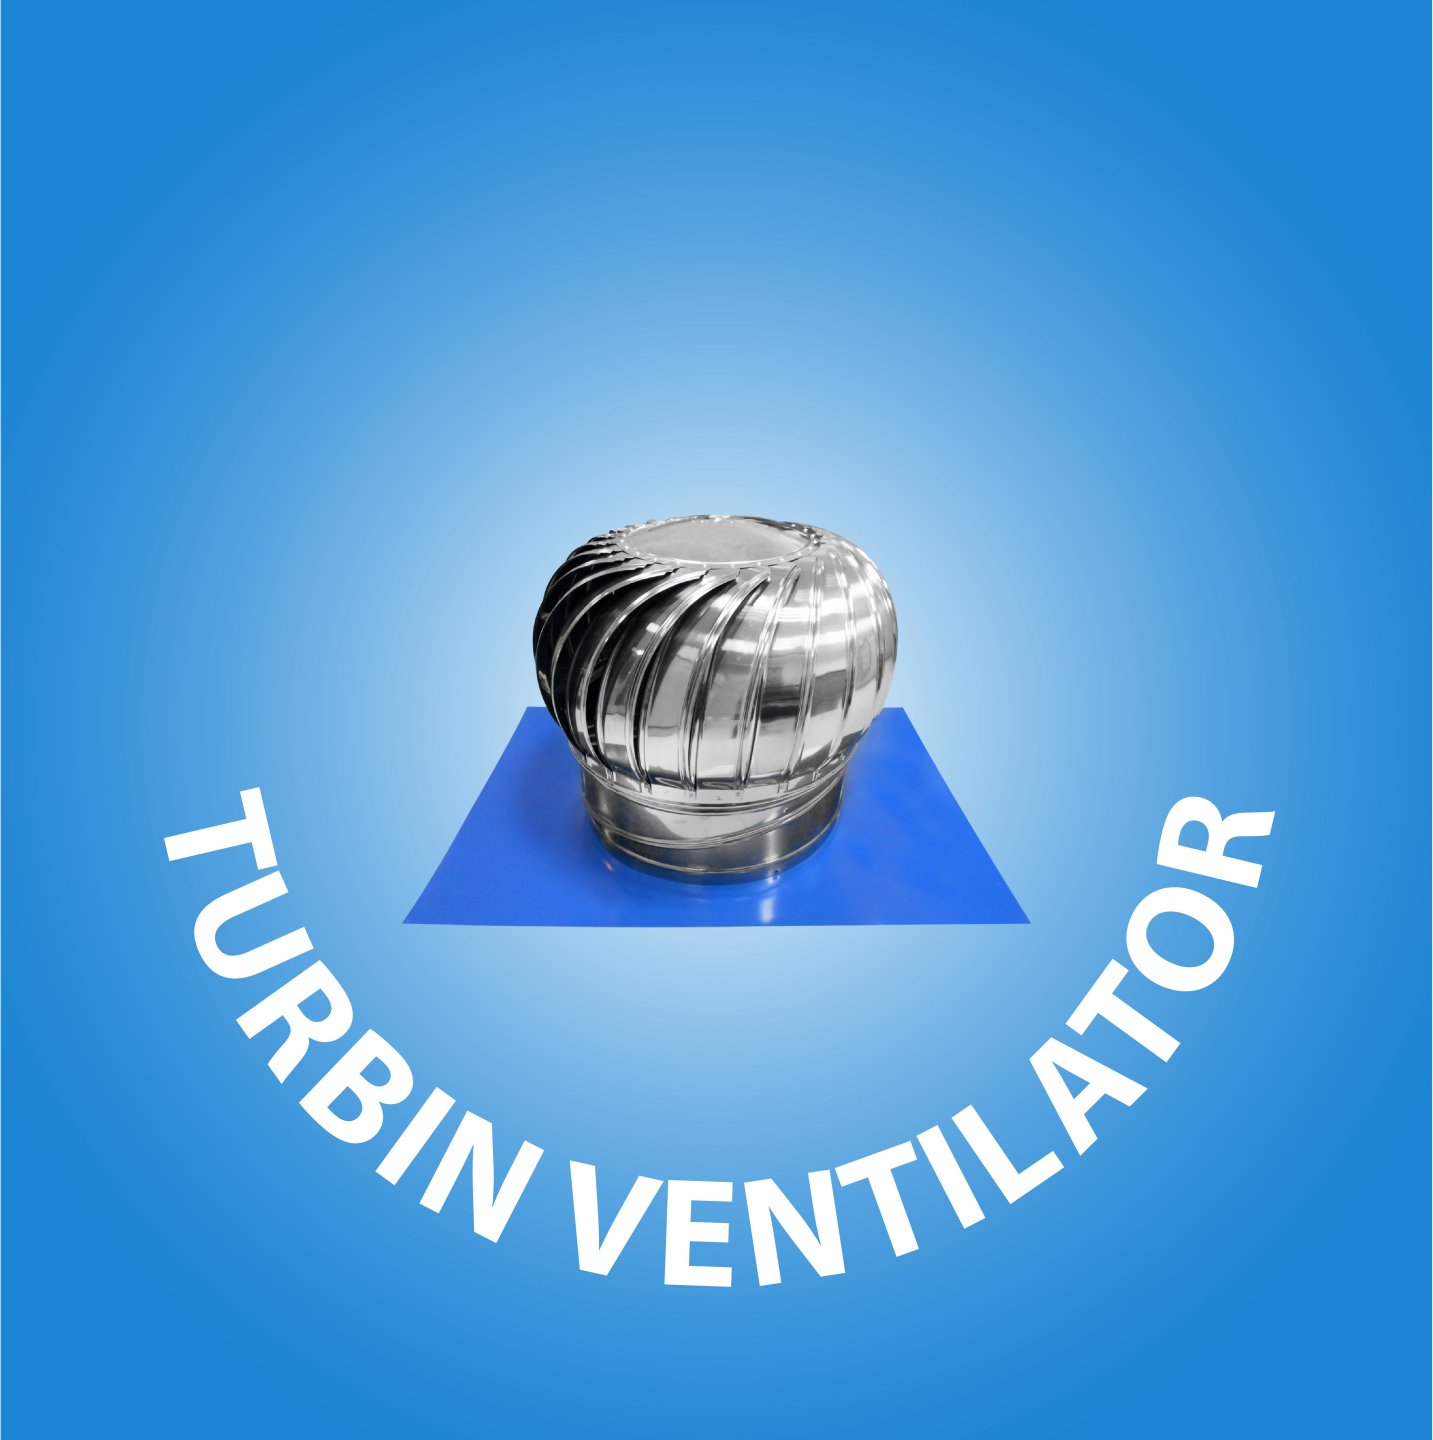  Turbin Ventilator cover kategori website 36